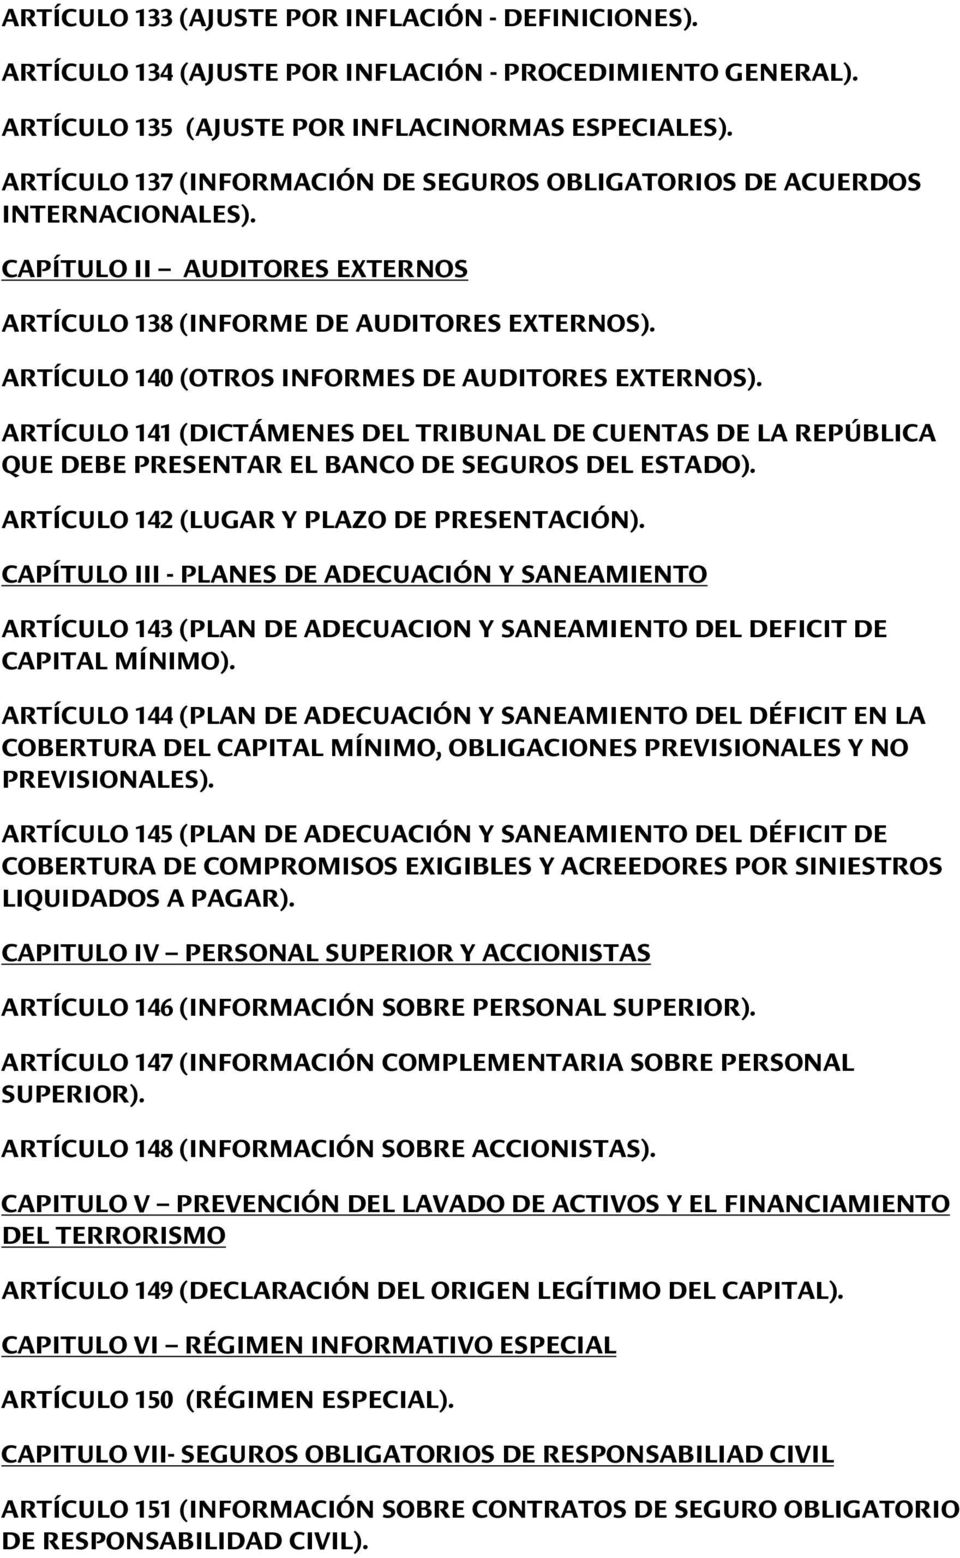 ARTÍCULO 140 (OTROS INFORMES DE AUDITORES EXTERNOS). ARTÍCULO 141 (DICTÁMENES DEL TRIBUNAL DE CUENTAS DE LA REPÚBLICA QUE DEBE PRESENTAR EL BANCO DE SEGUROS DEL ESTADO).